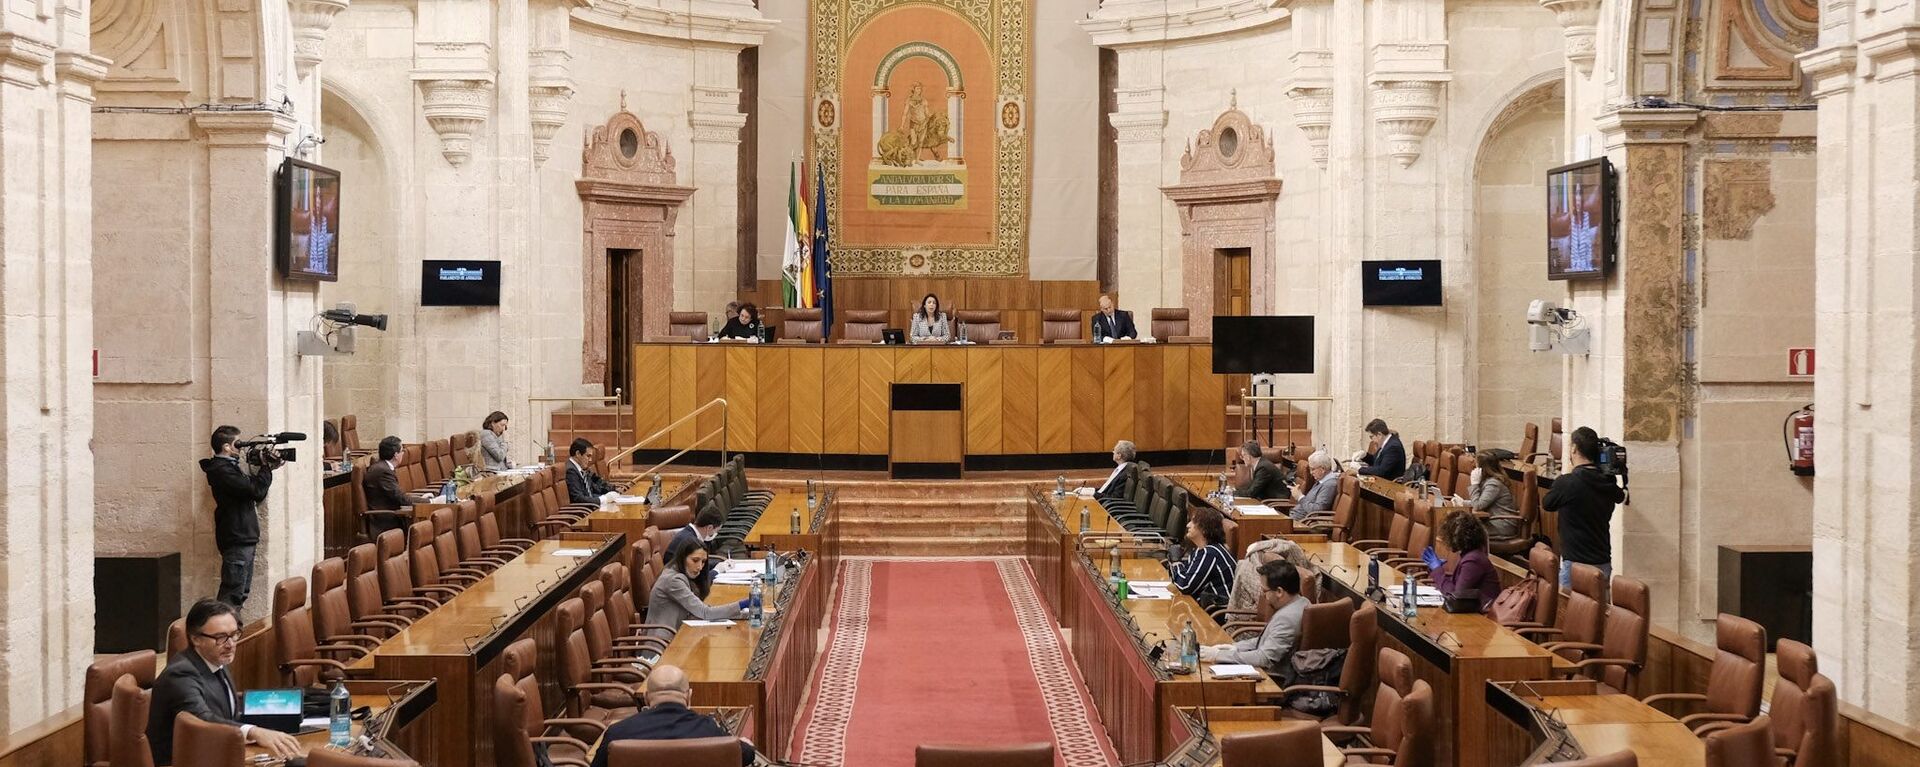 La Diputación Permanente del Parlamento de Andalucía - Sputnik Mundo, 1920, 04.04.2020